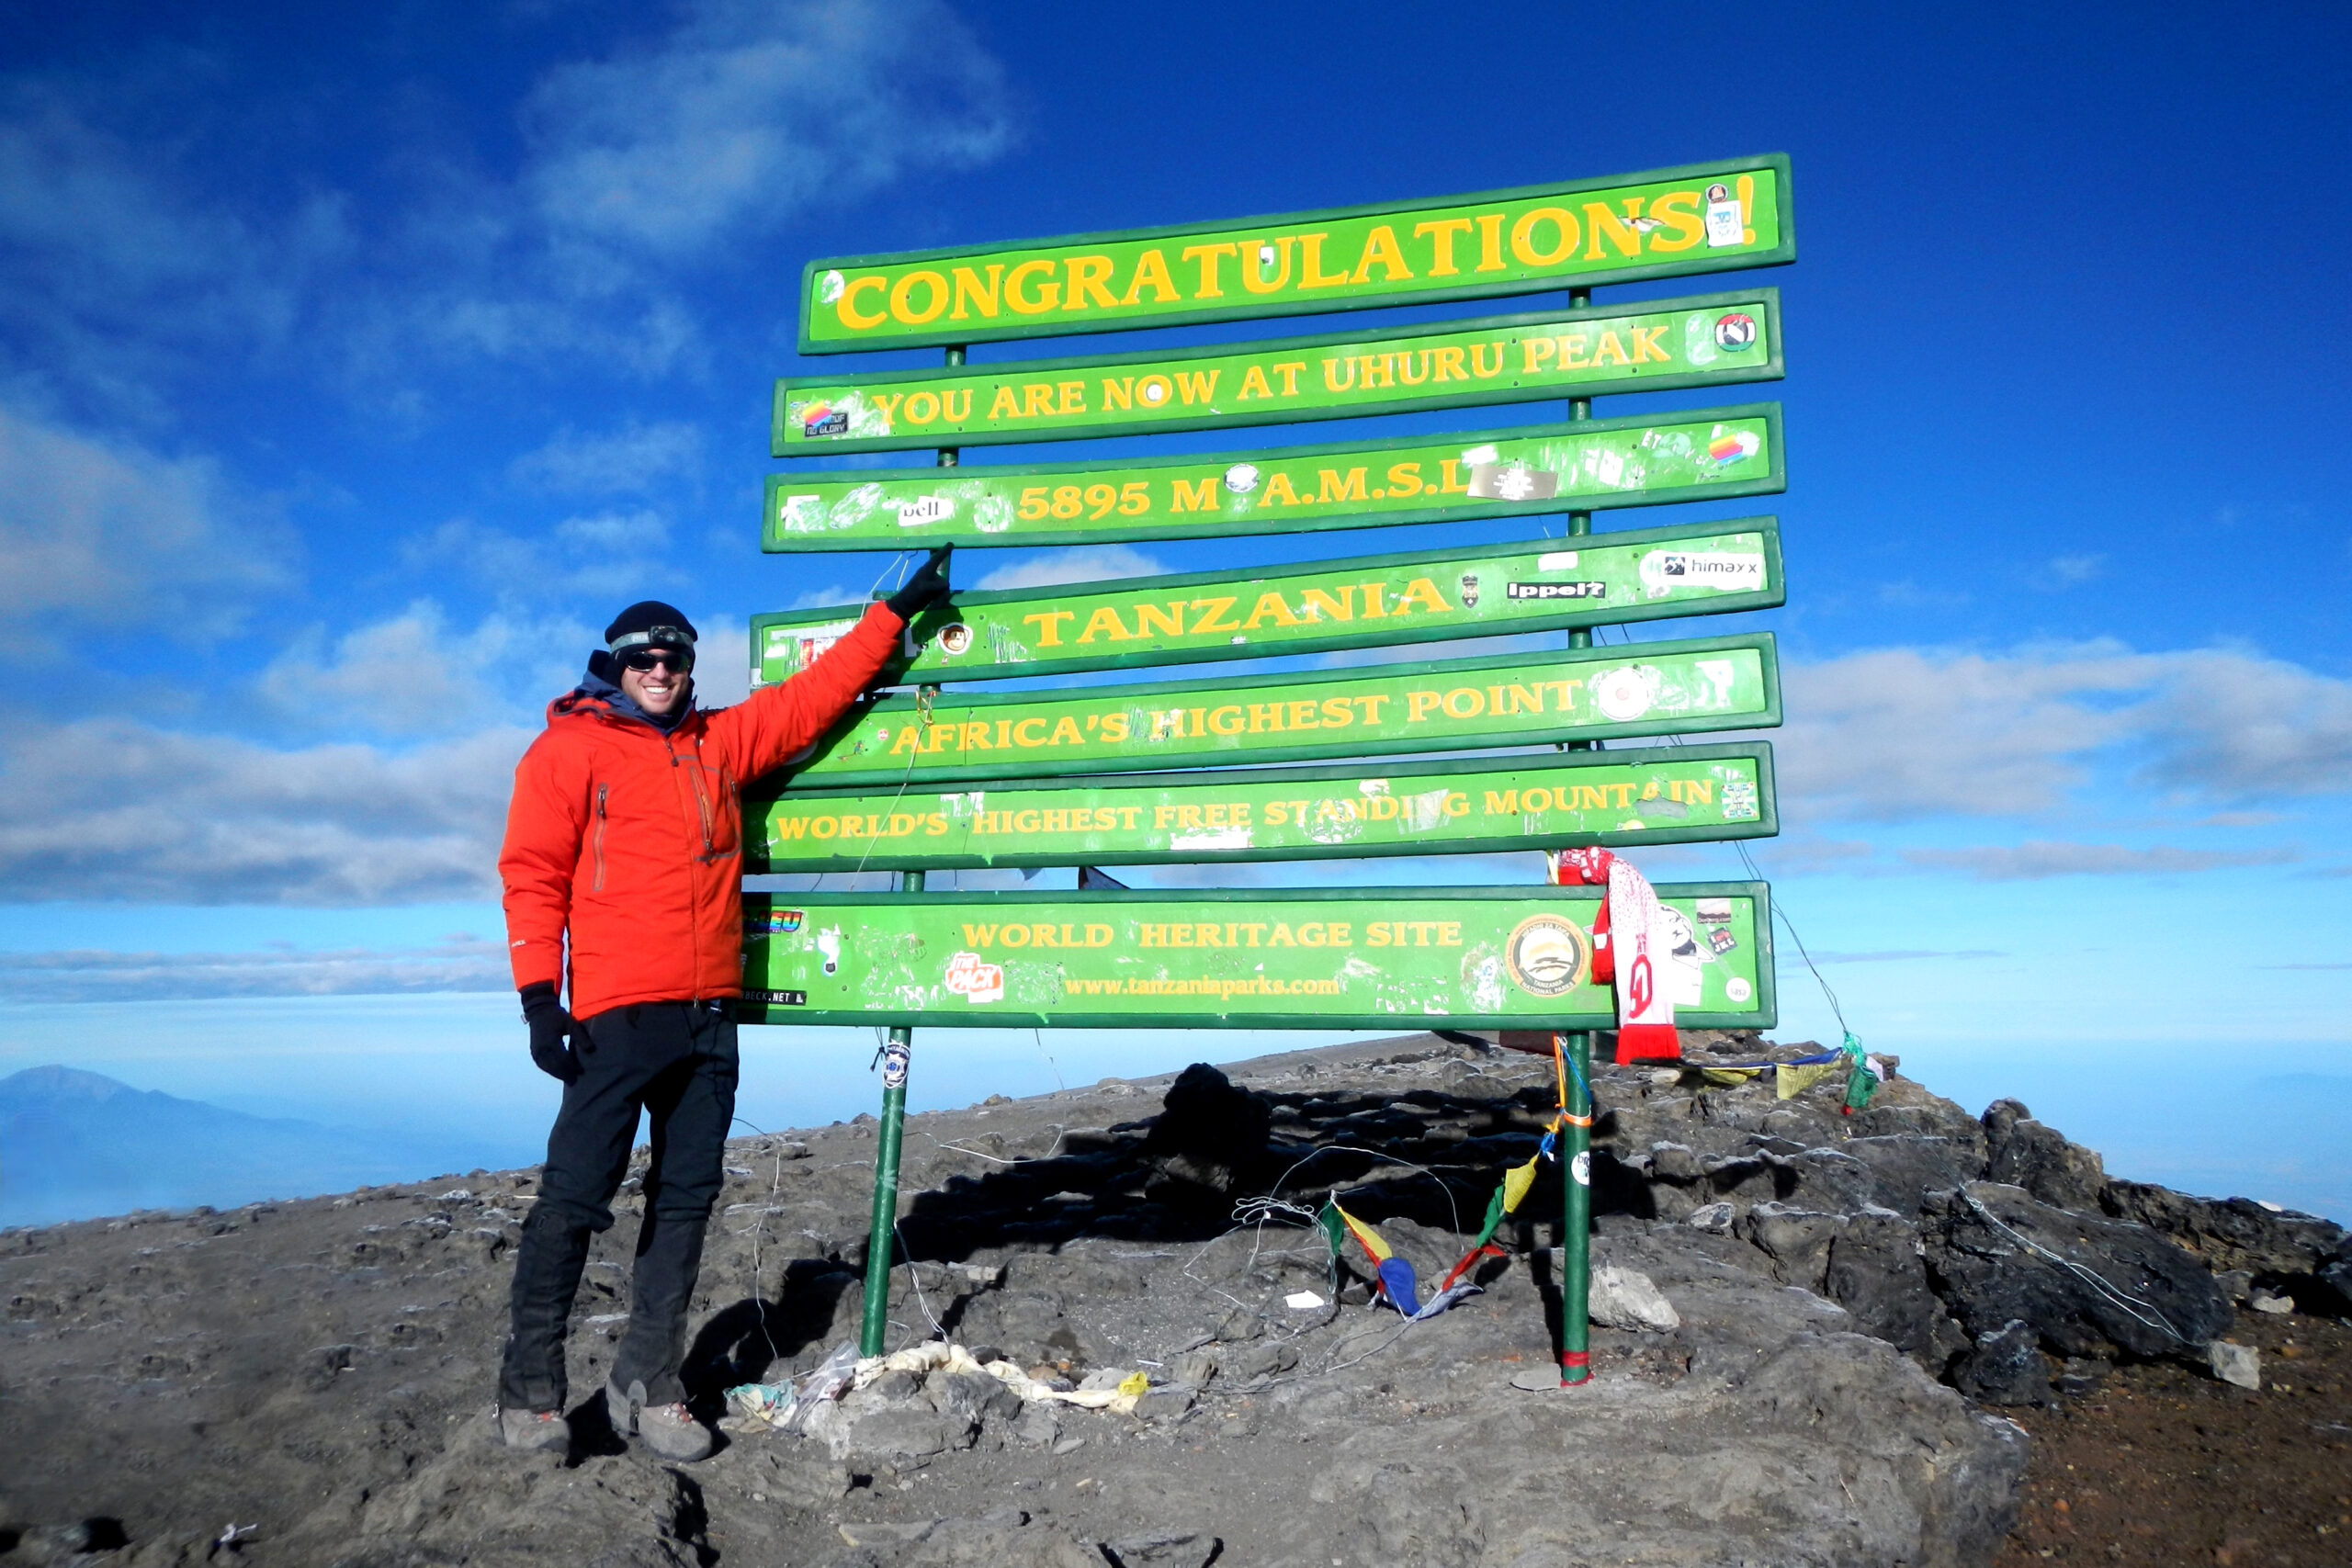 Josh at the Mount Kilimanjaro Summit